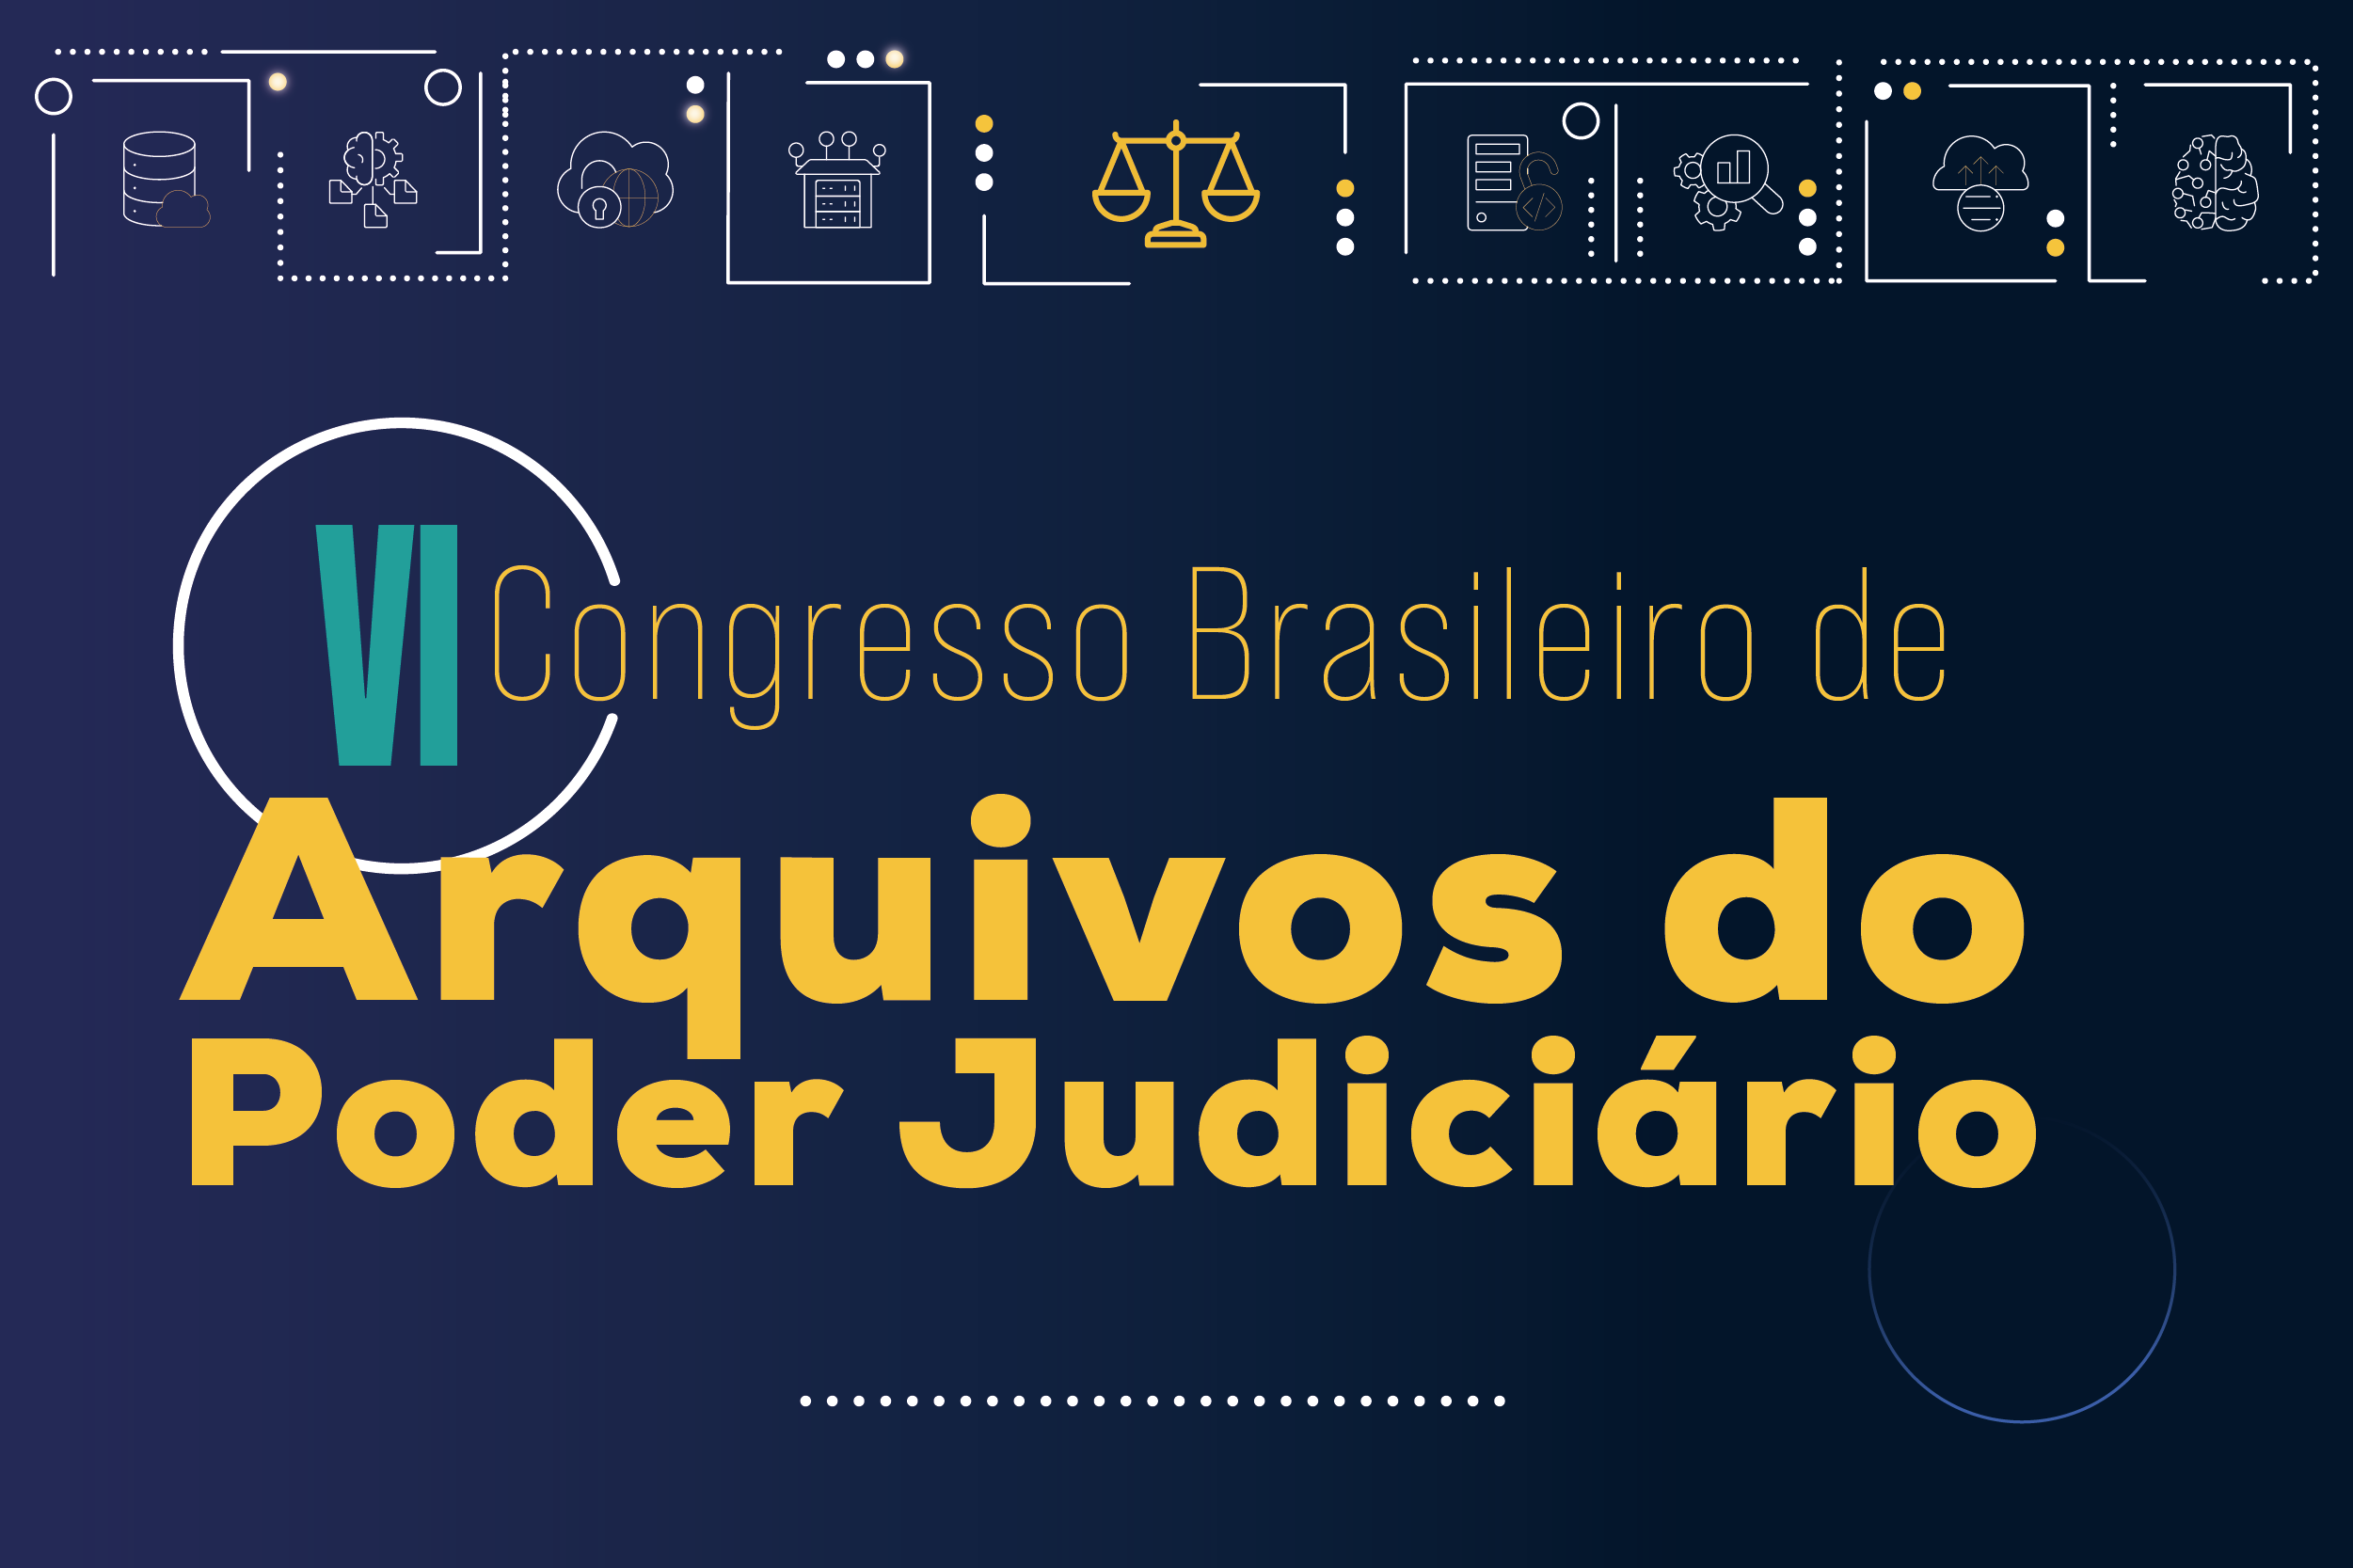 Últimos dias para se inscrever no VI Congresso Brasileiro de Arquivos do Poder Judiciário